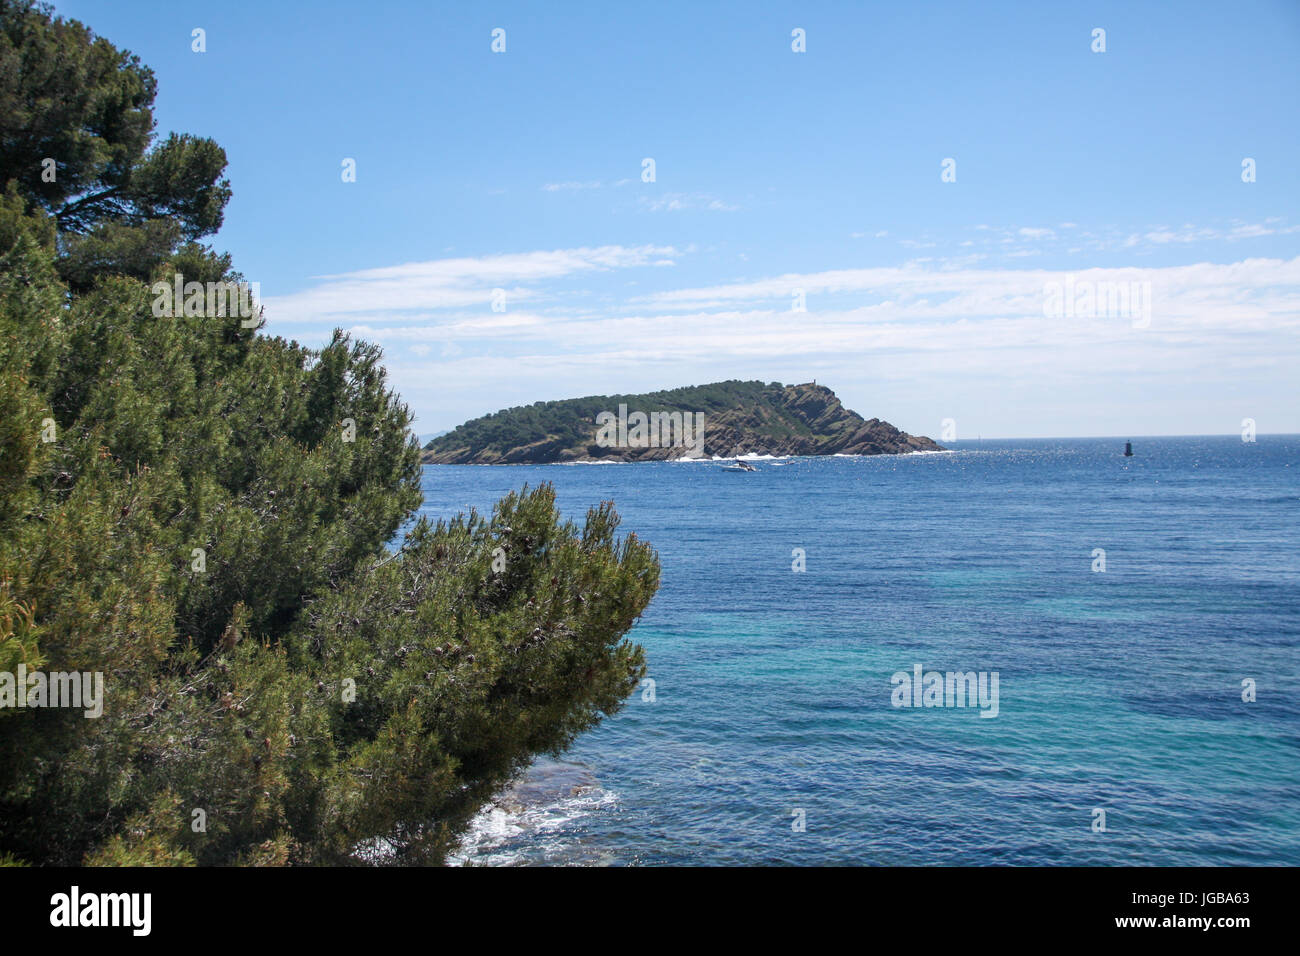 Calanque Près de Cassis, Côte d ' Azur, Frankreich - felsige Bucht in der Nähe von Cassis, Côte d ' Azur, Frankreich Stockfoto